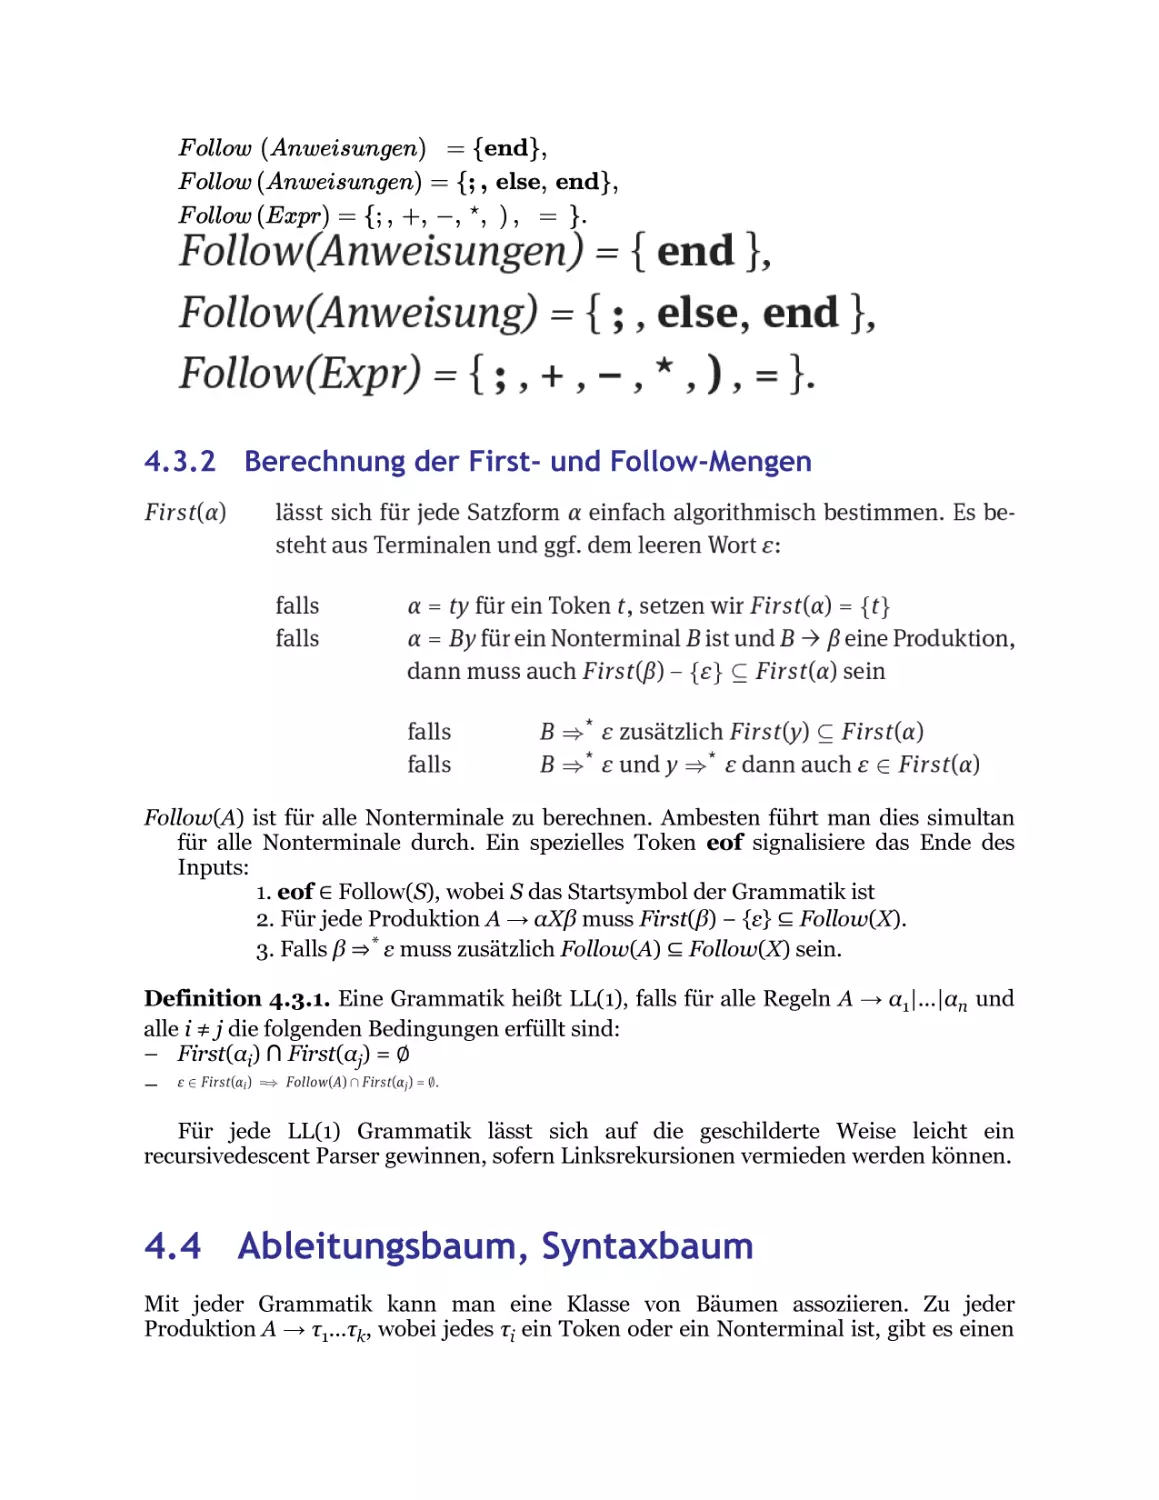 4.4 Ableitungsbaum, Syntaxbaum